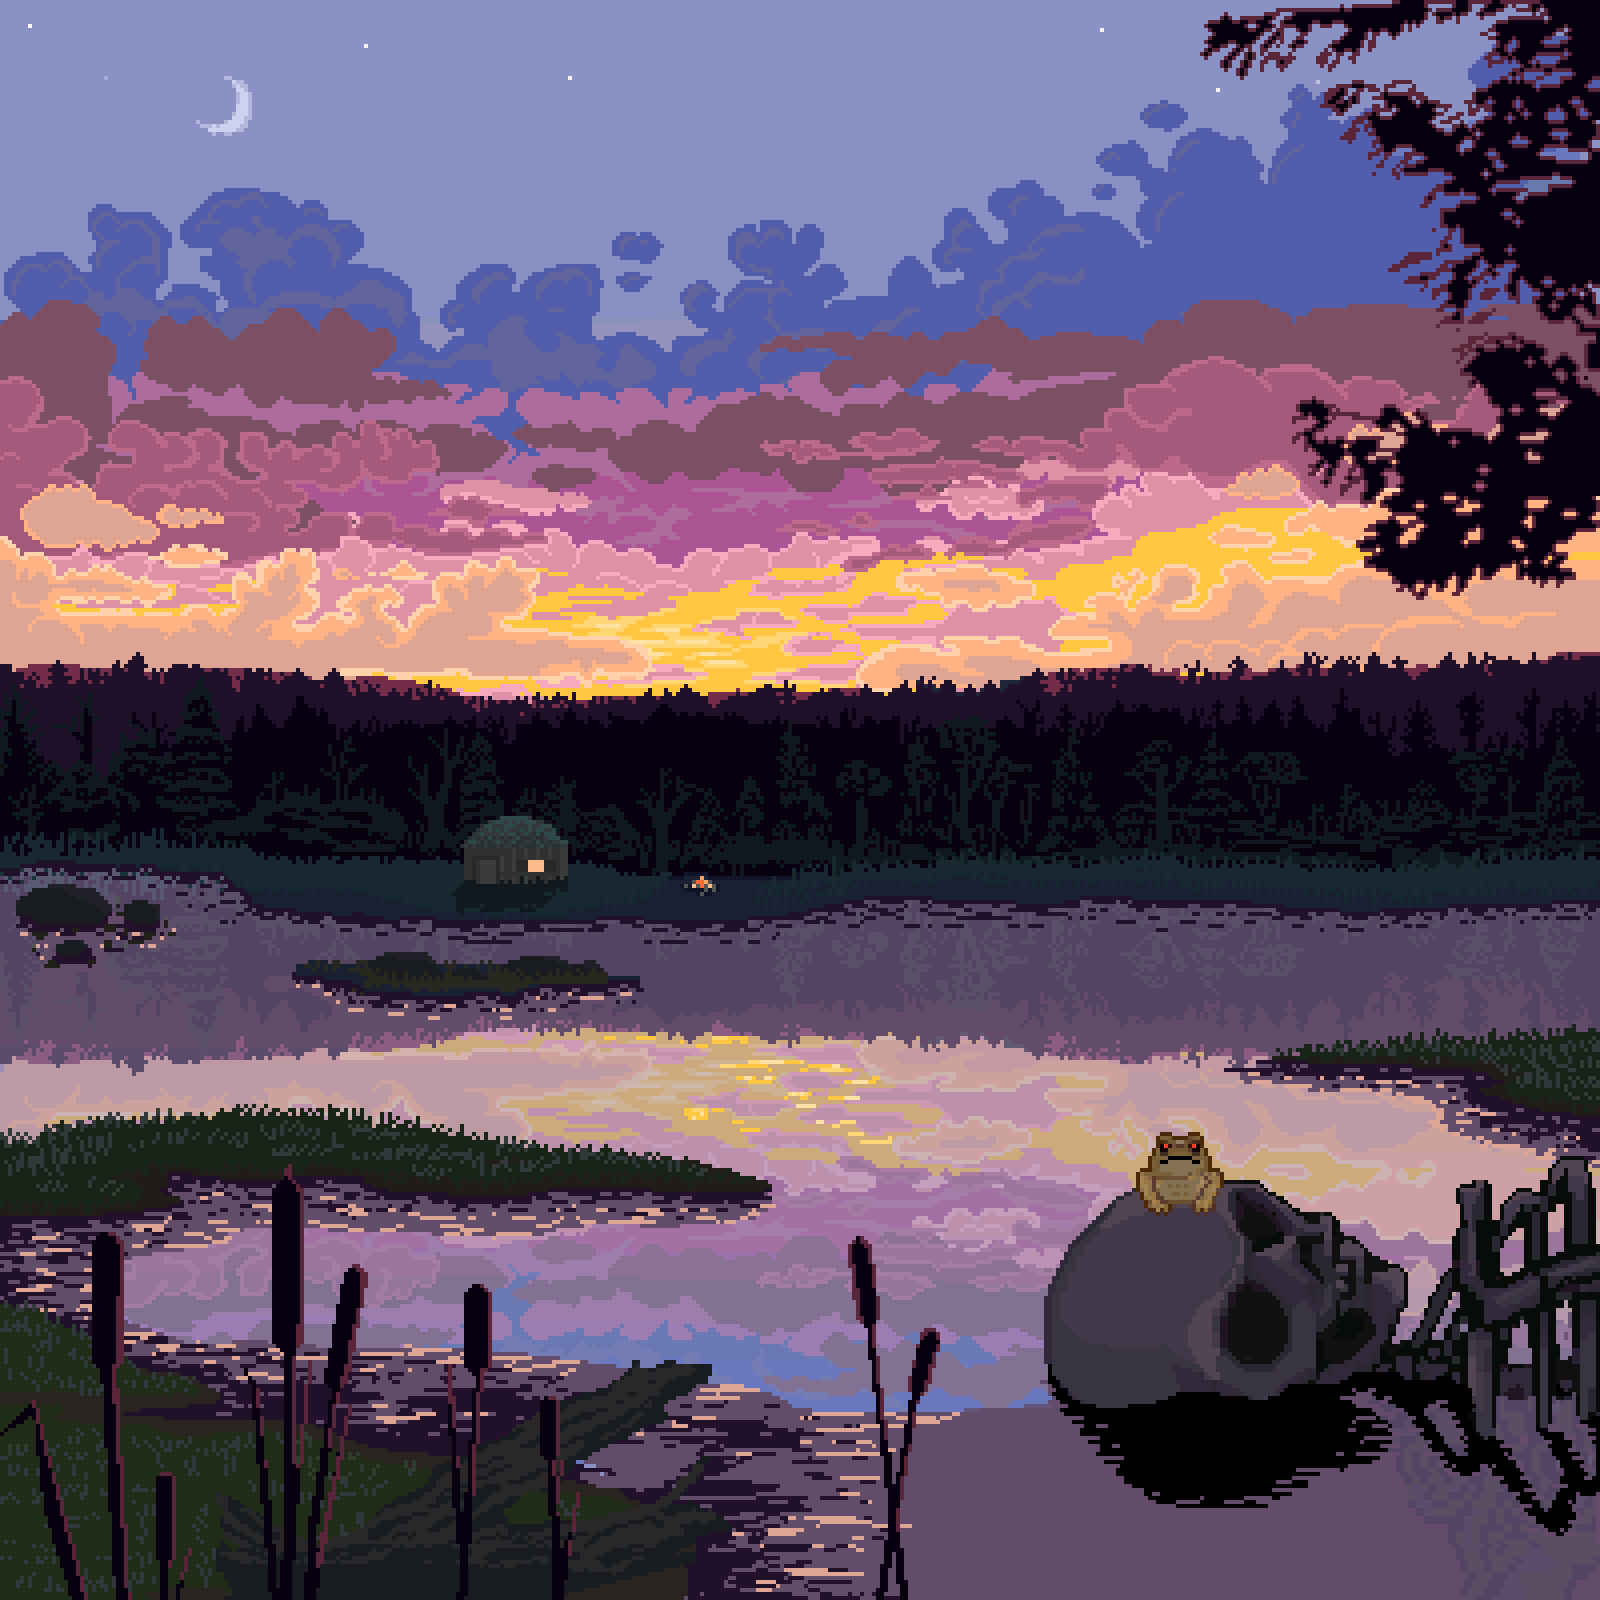 Detriti's Swamp (Dawn)